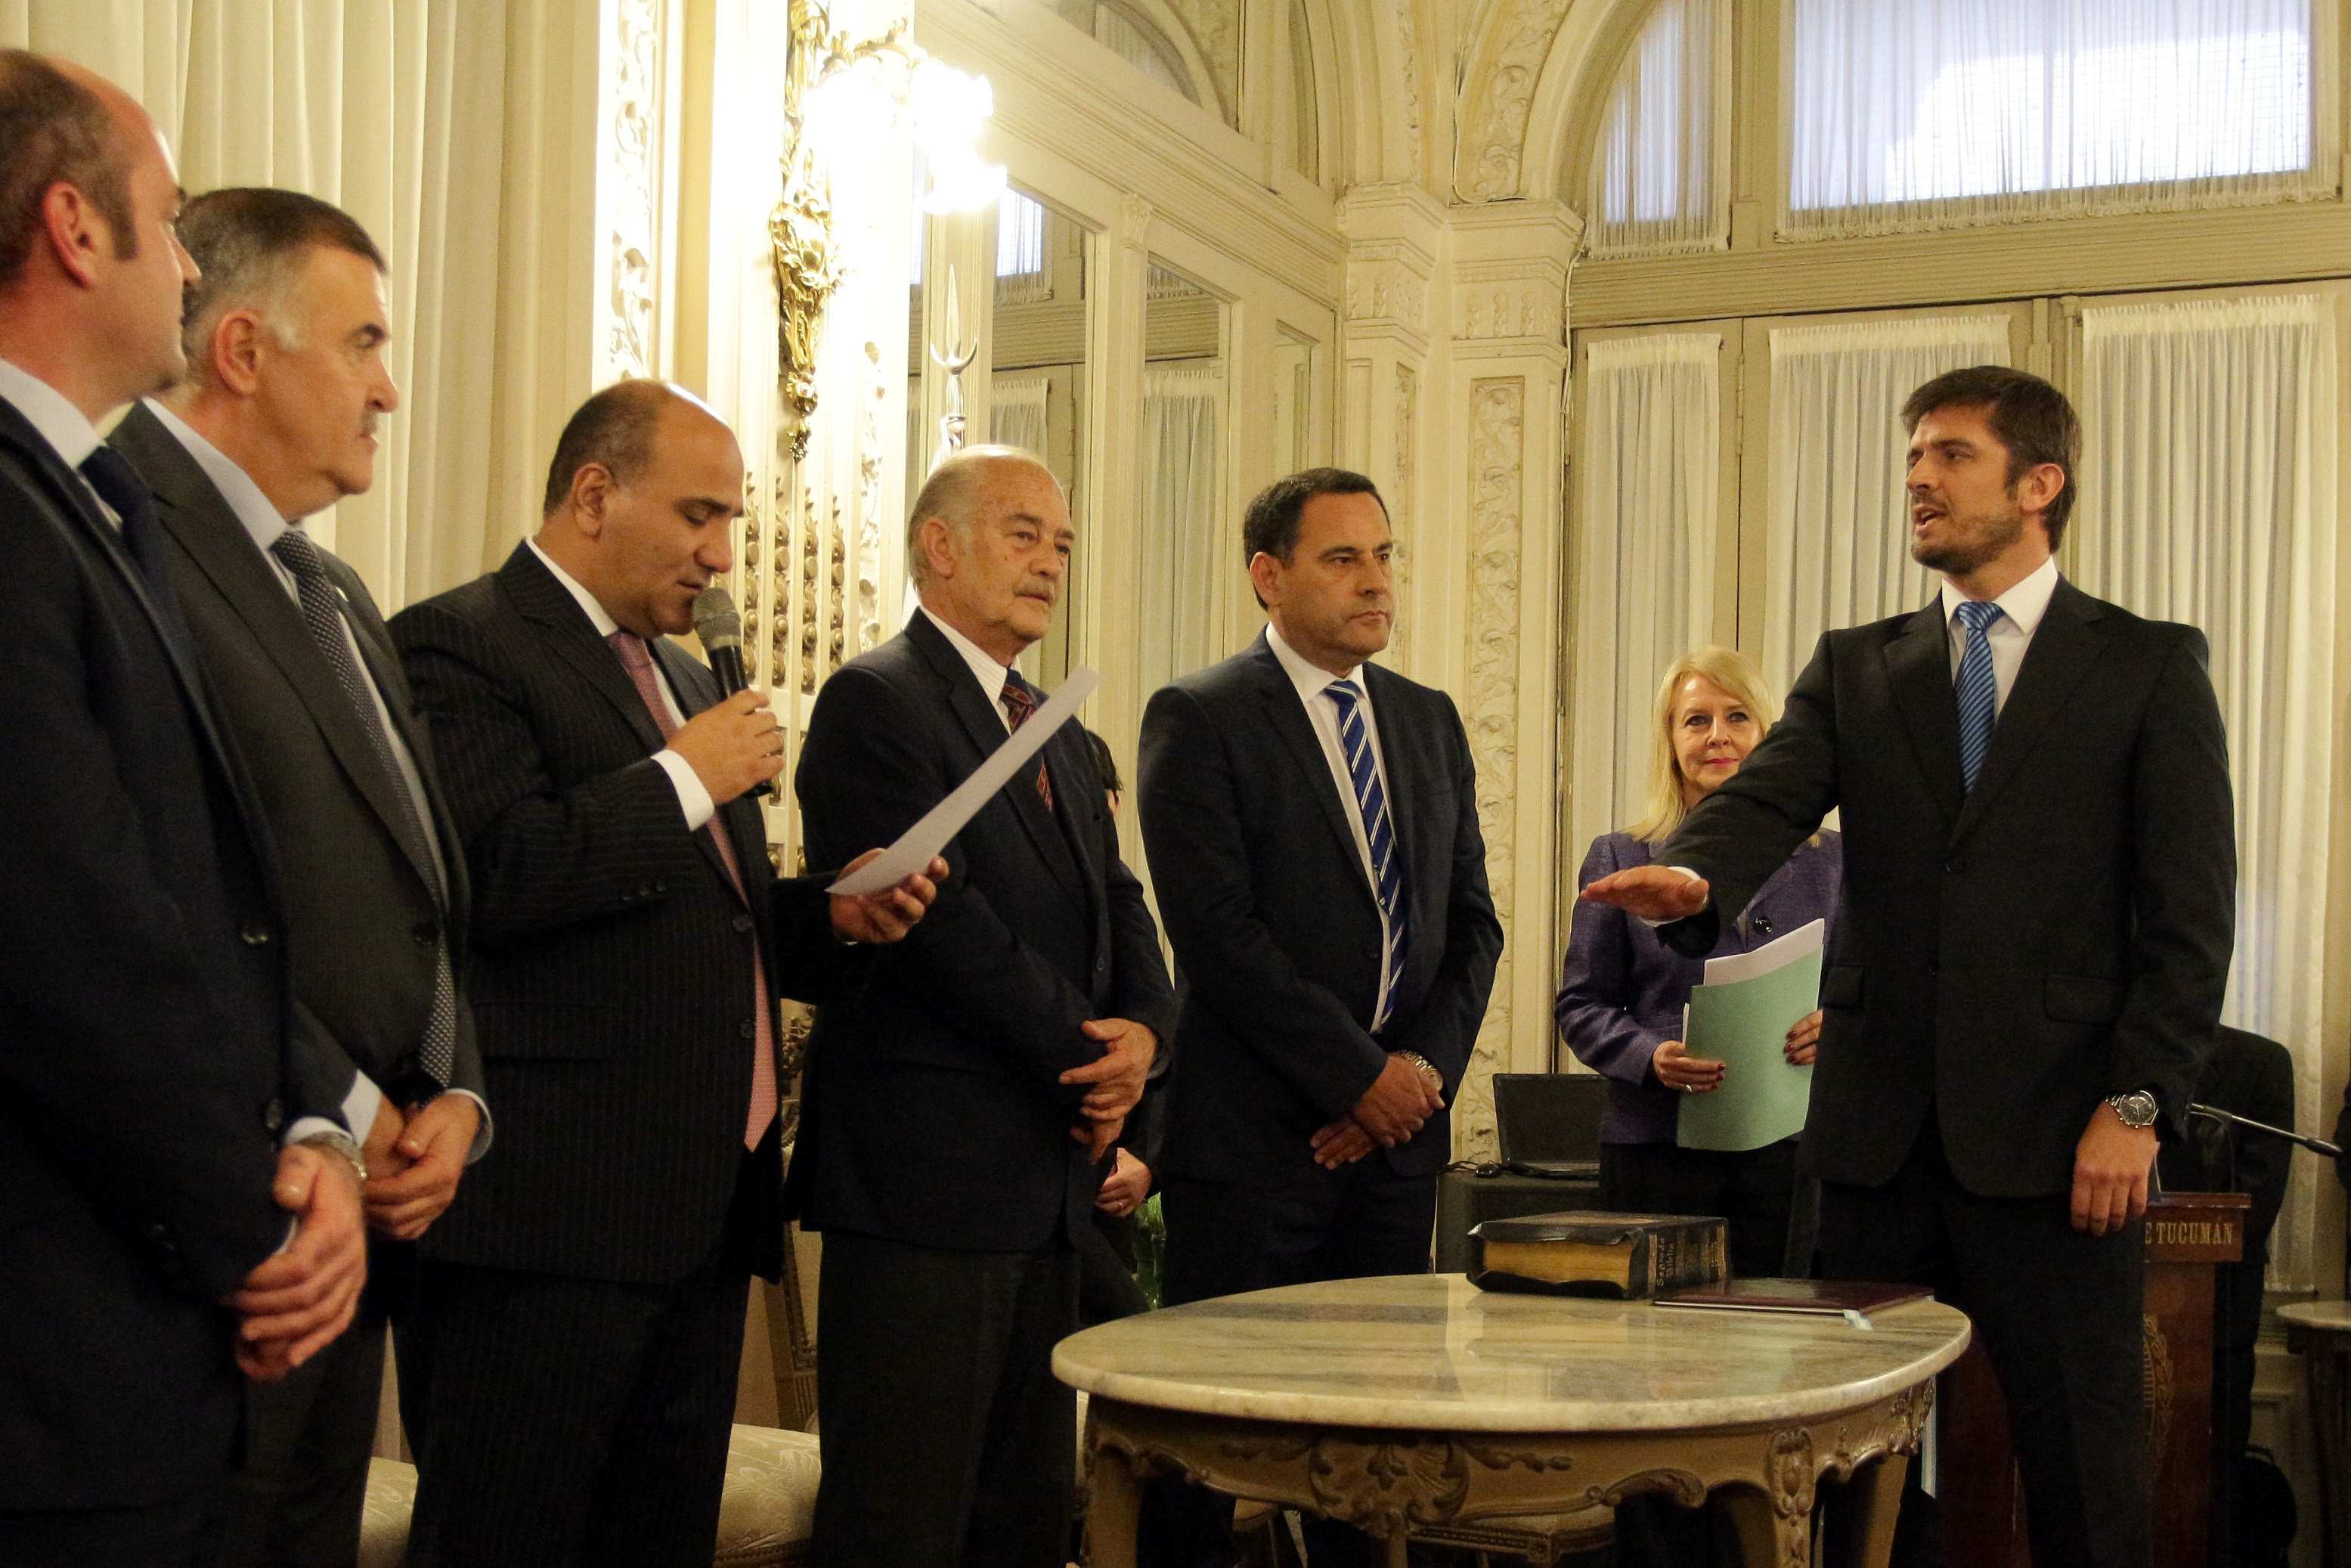 El gobernador Juan Manzur tomó el juramento de rigor a Sebastián Giobellina, presidente del Ente Tucumán Turismo